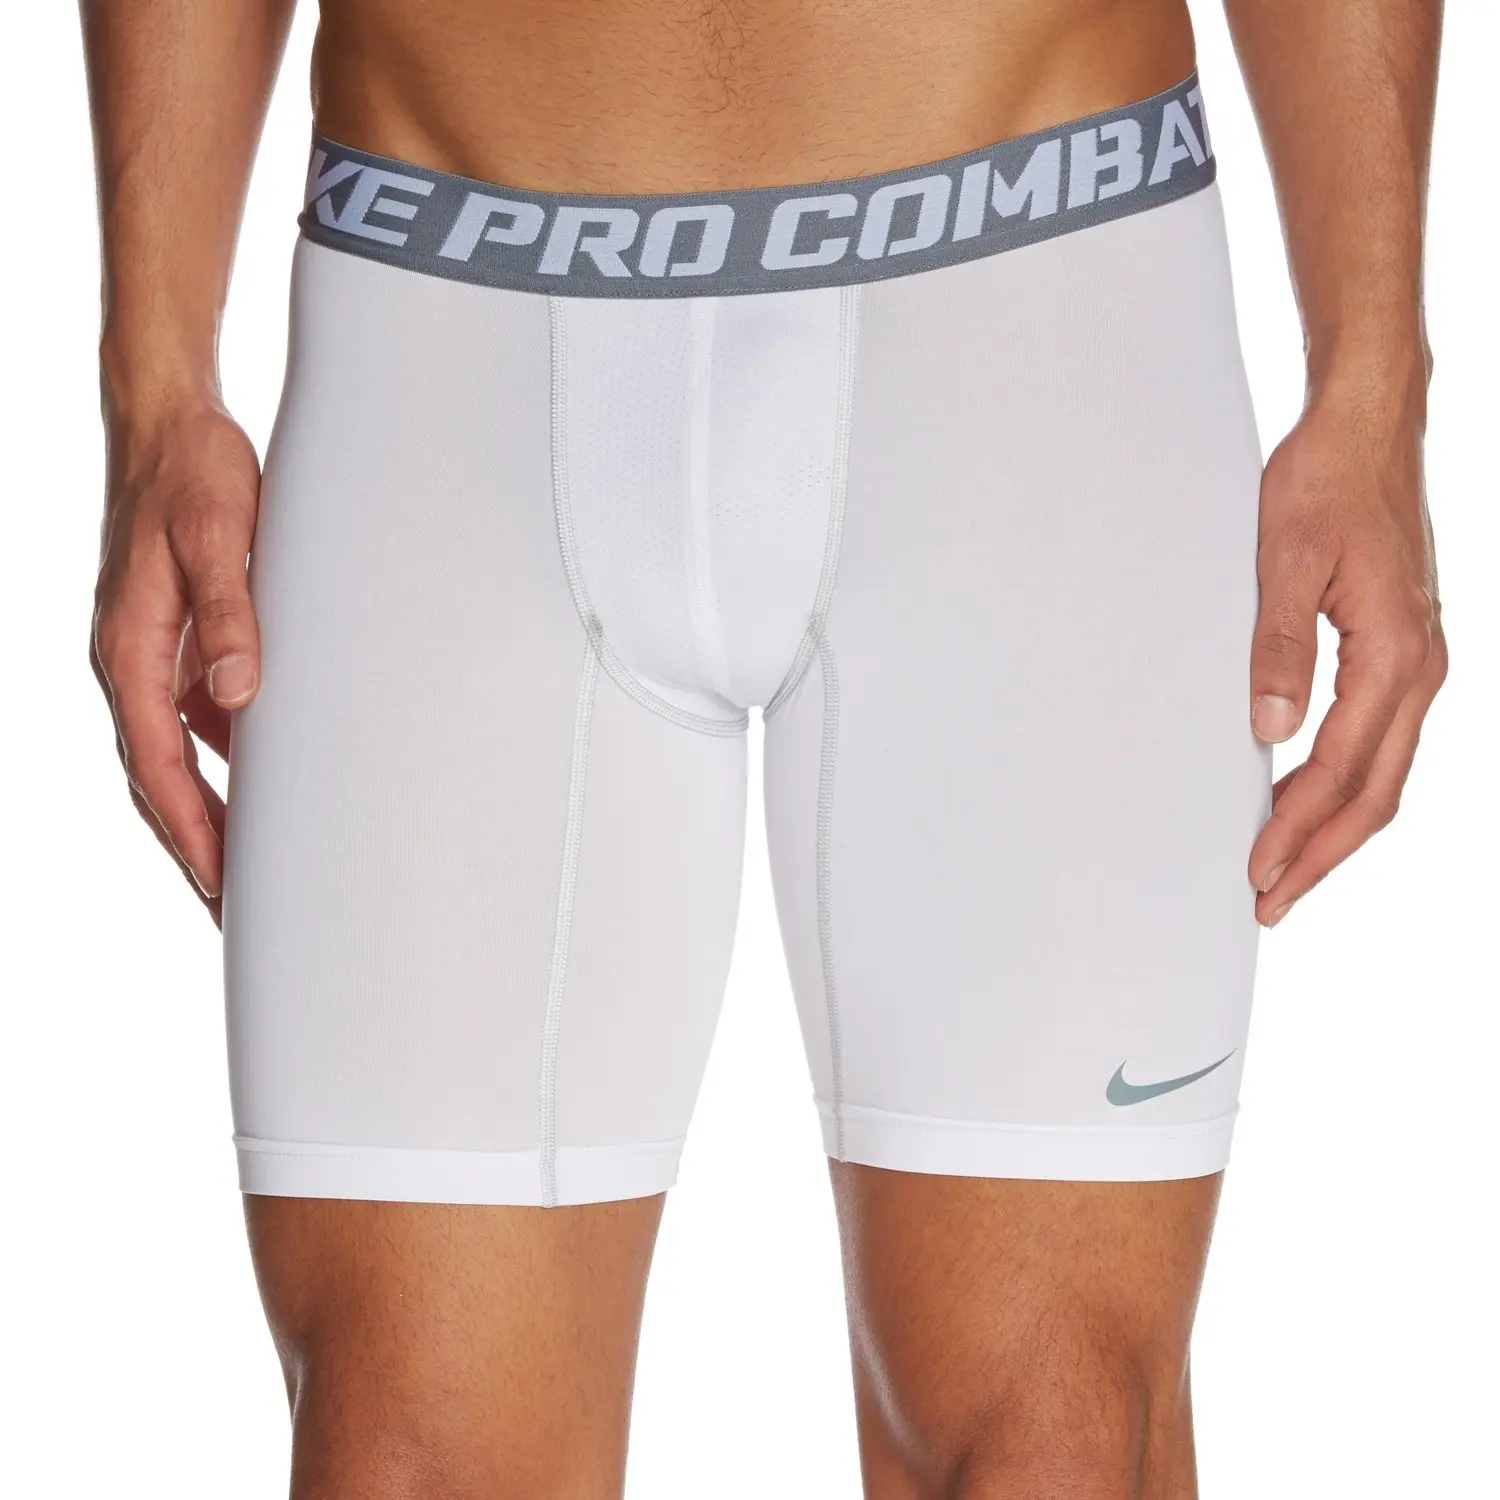 mens nike pro combat compression shorts